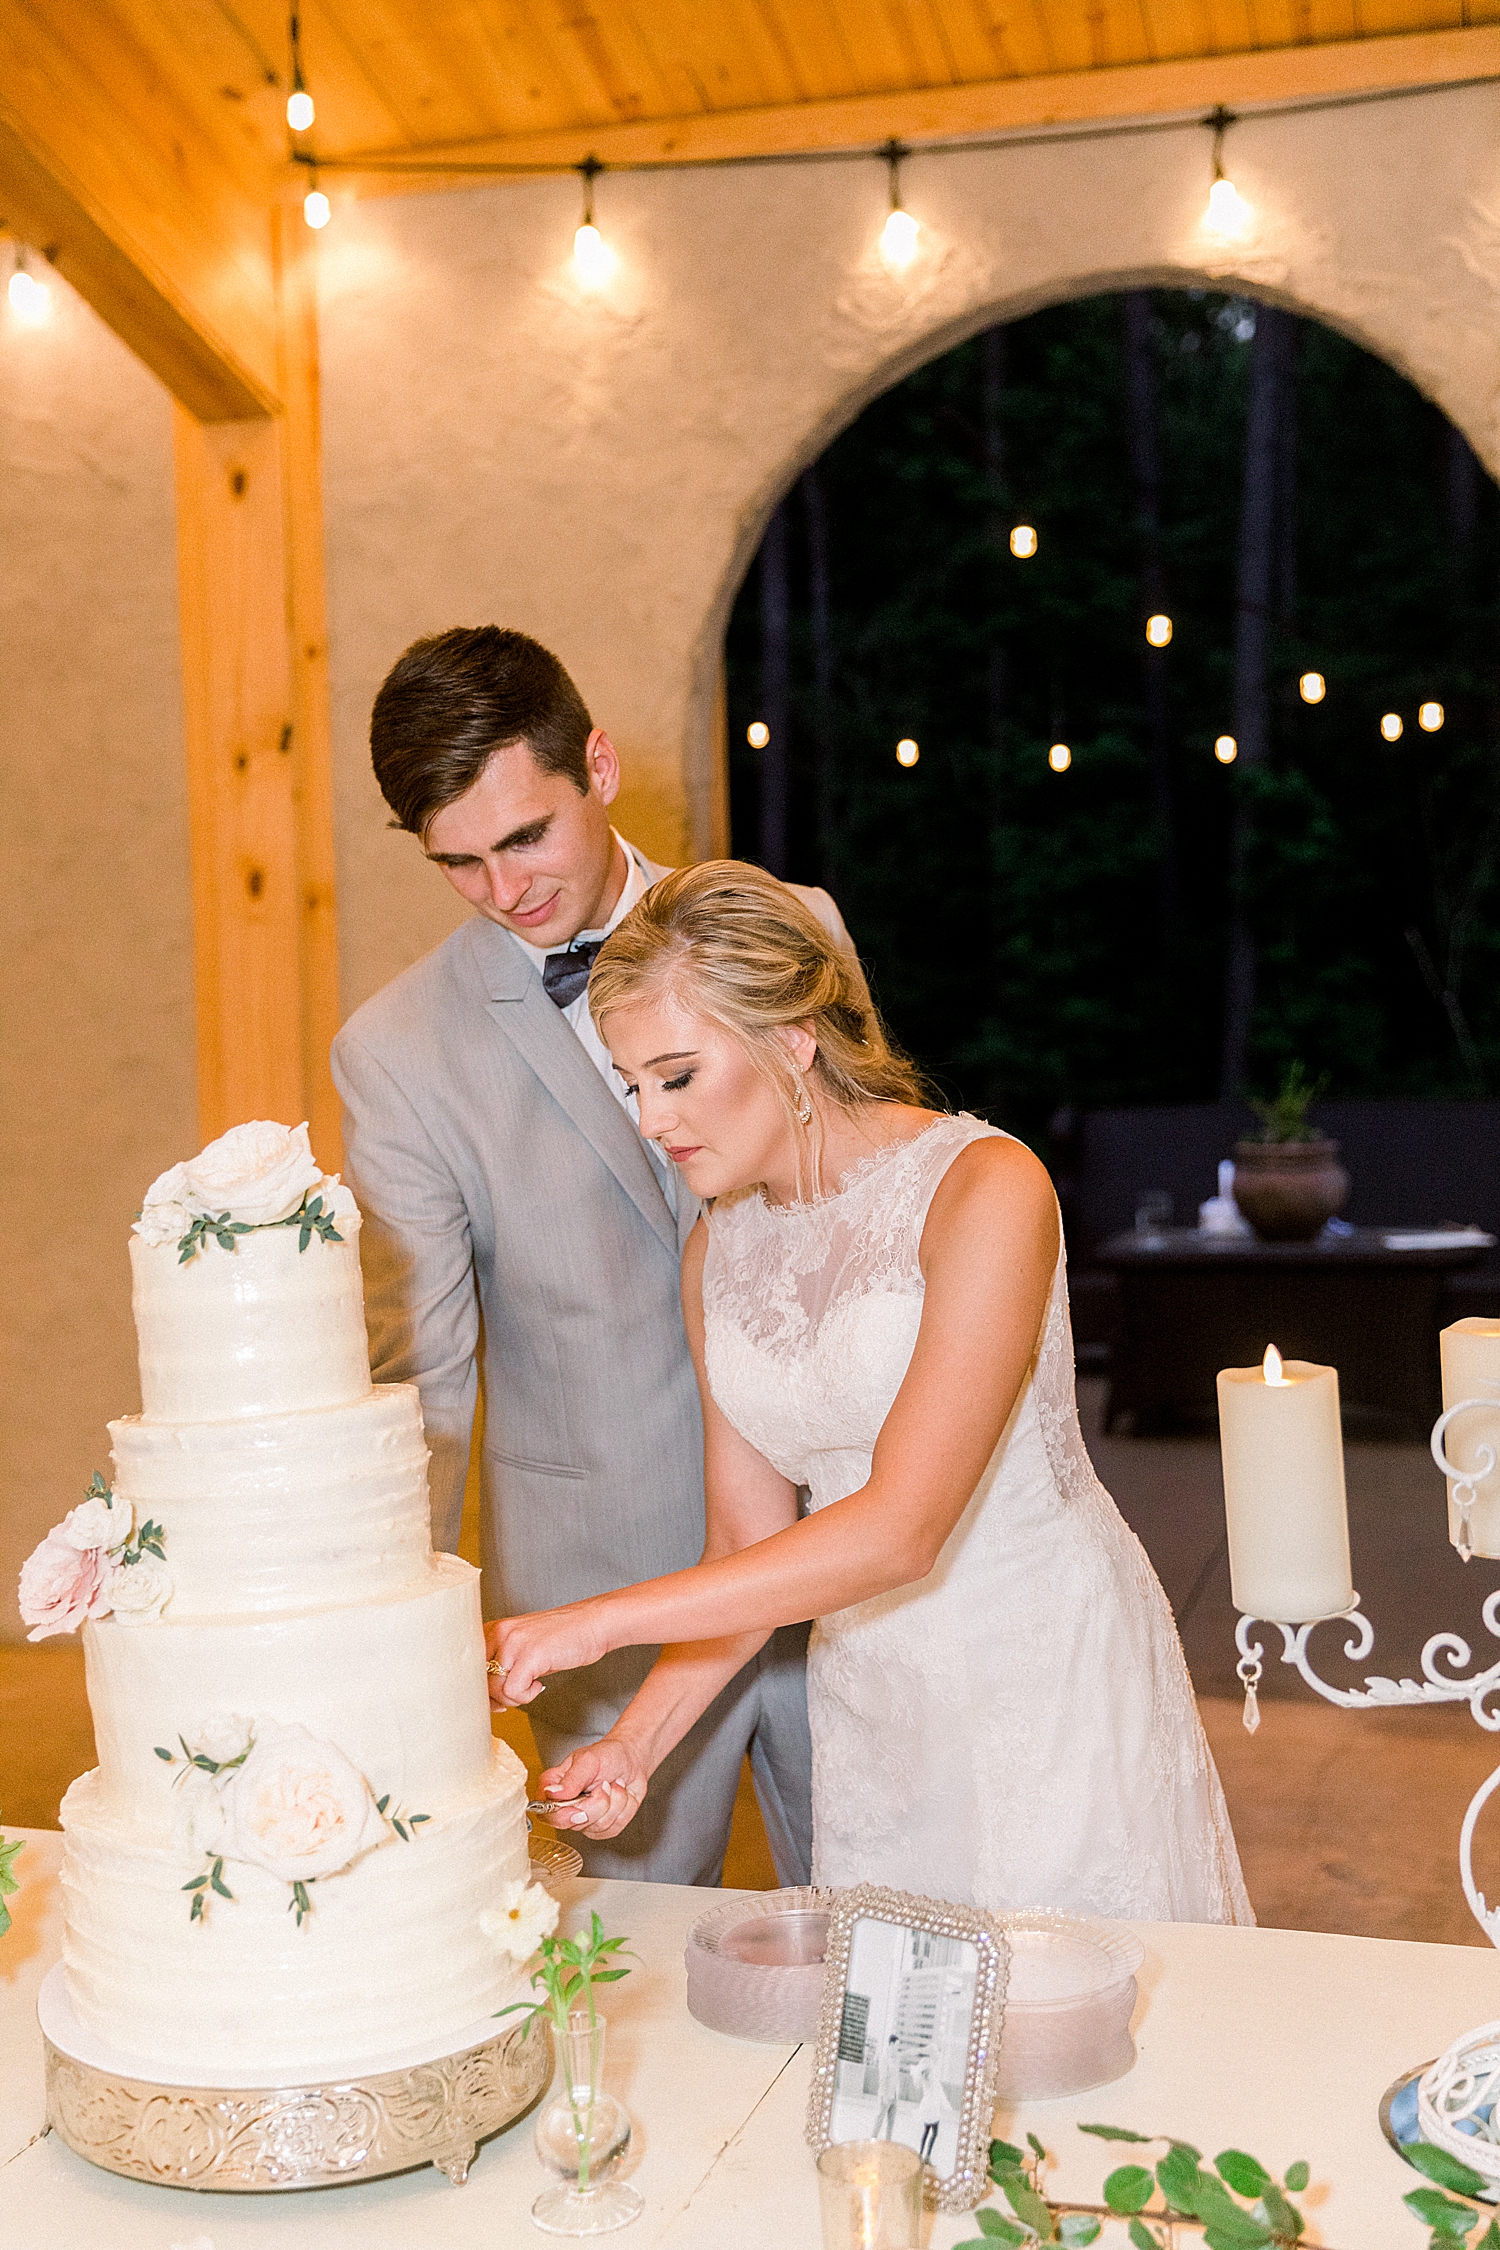 newlyweds cut wedding cake at Birmingham AL wedding reception